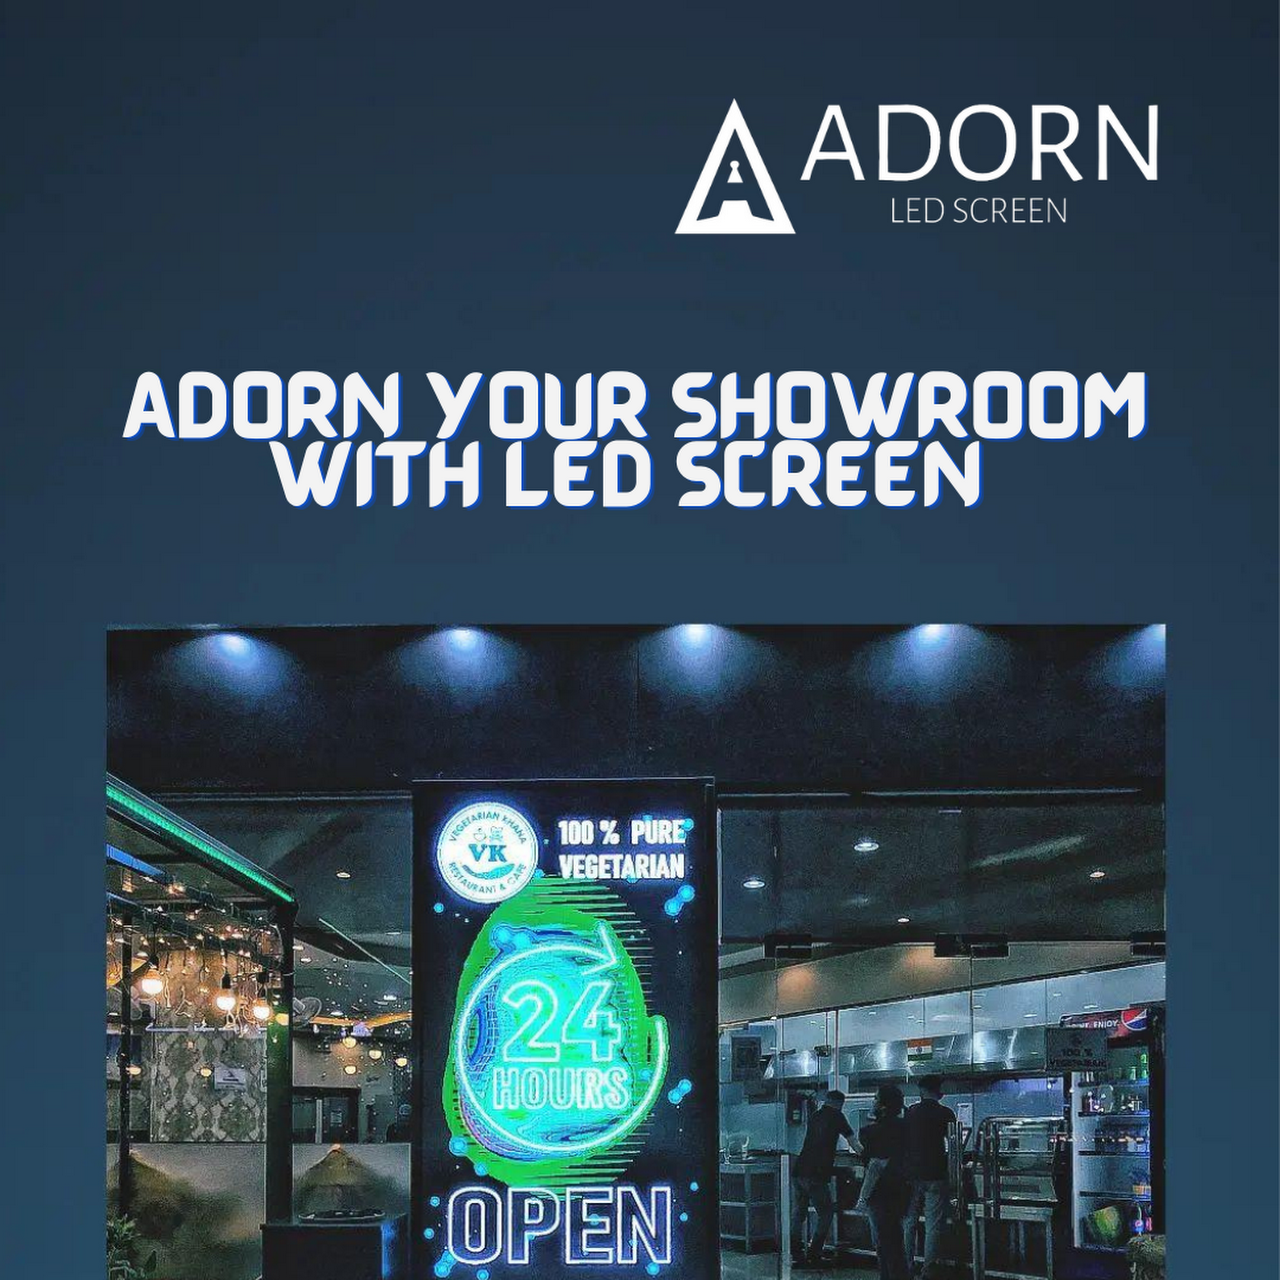 Best LED showroom in UAE